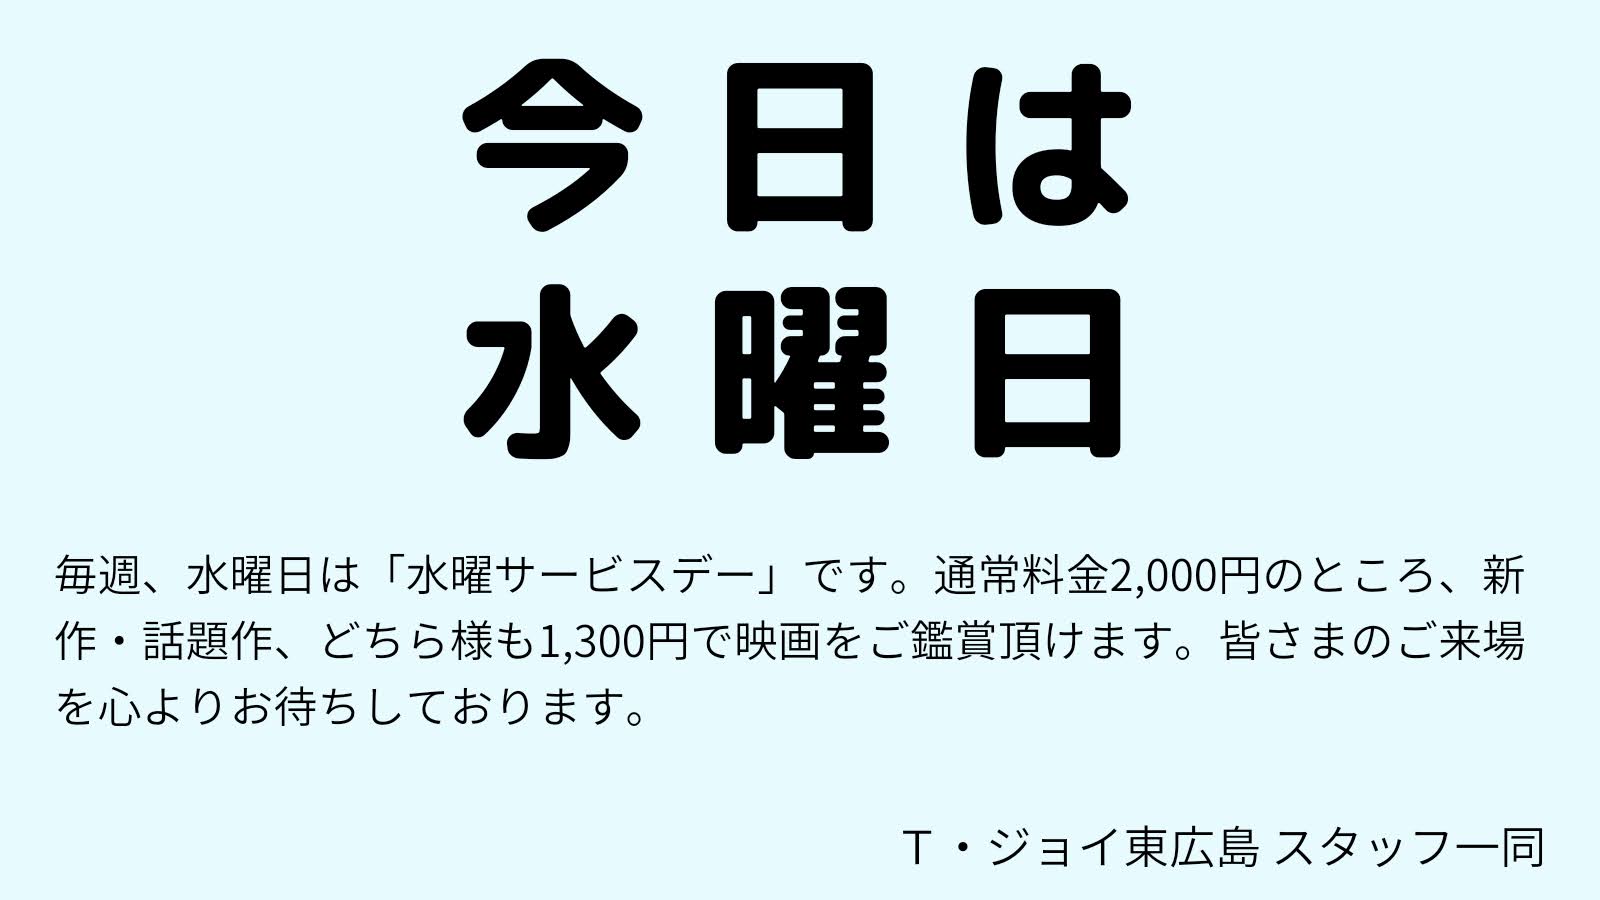 毎週水曜日のＴ・ジョイ東広島は「水曜サービスデー」。 今日、6月14日(水)は映画観賞、通常1,900円のところ、男性も女性も1,300円でご鑑賞いただけます。(特別料金、3Dを除く )